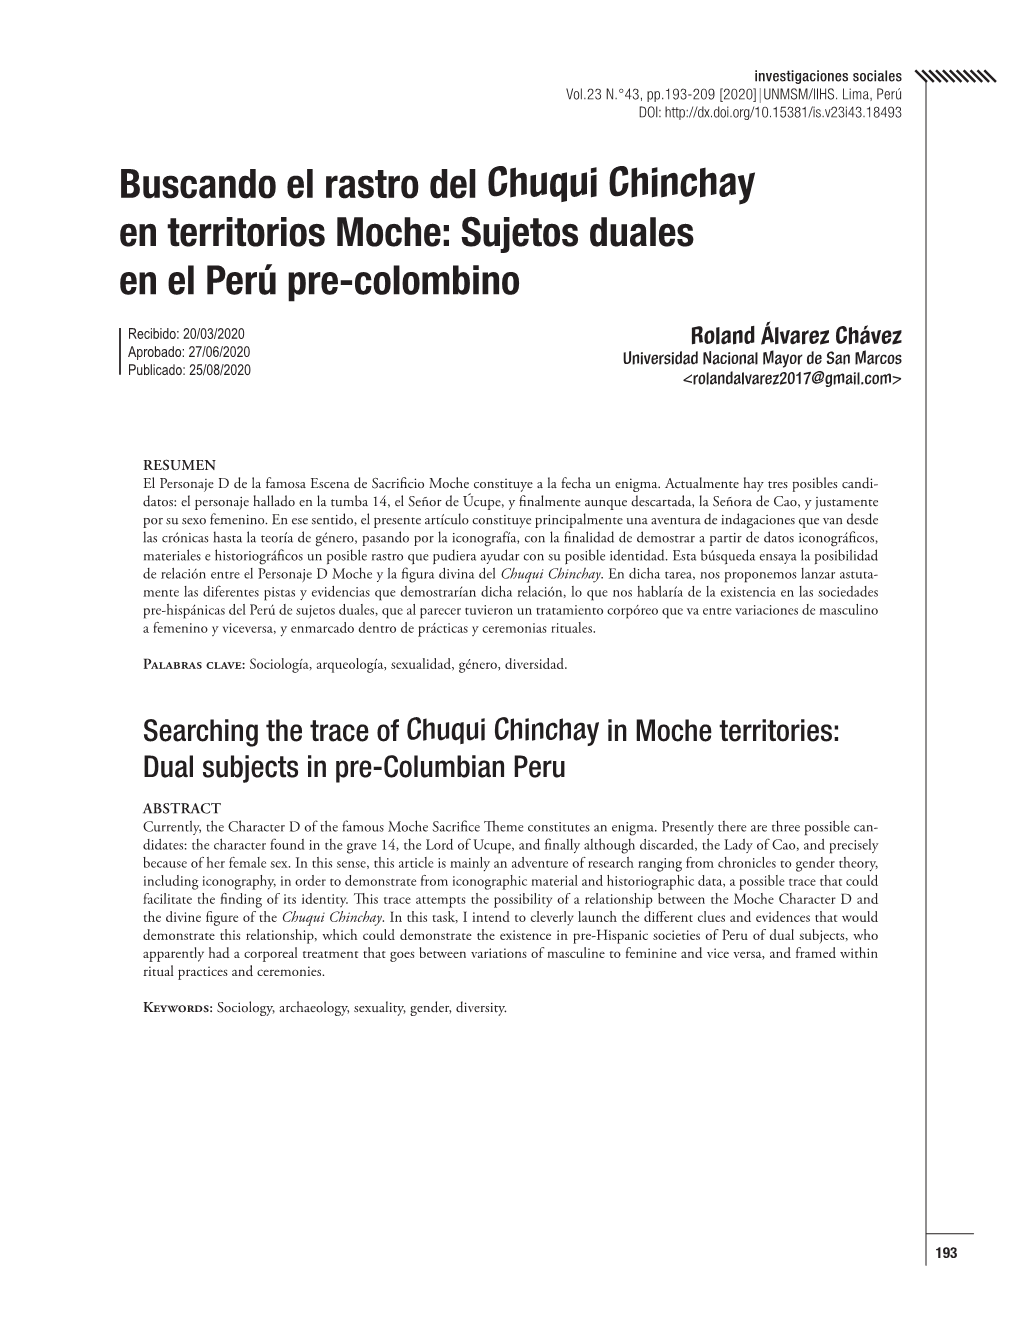 Buscando El Rastro Del Chuqui Chinchay En Territorios Moche: Sujetos Duales En El Perú Pre-Colombino